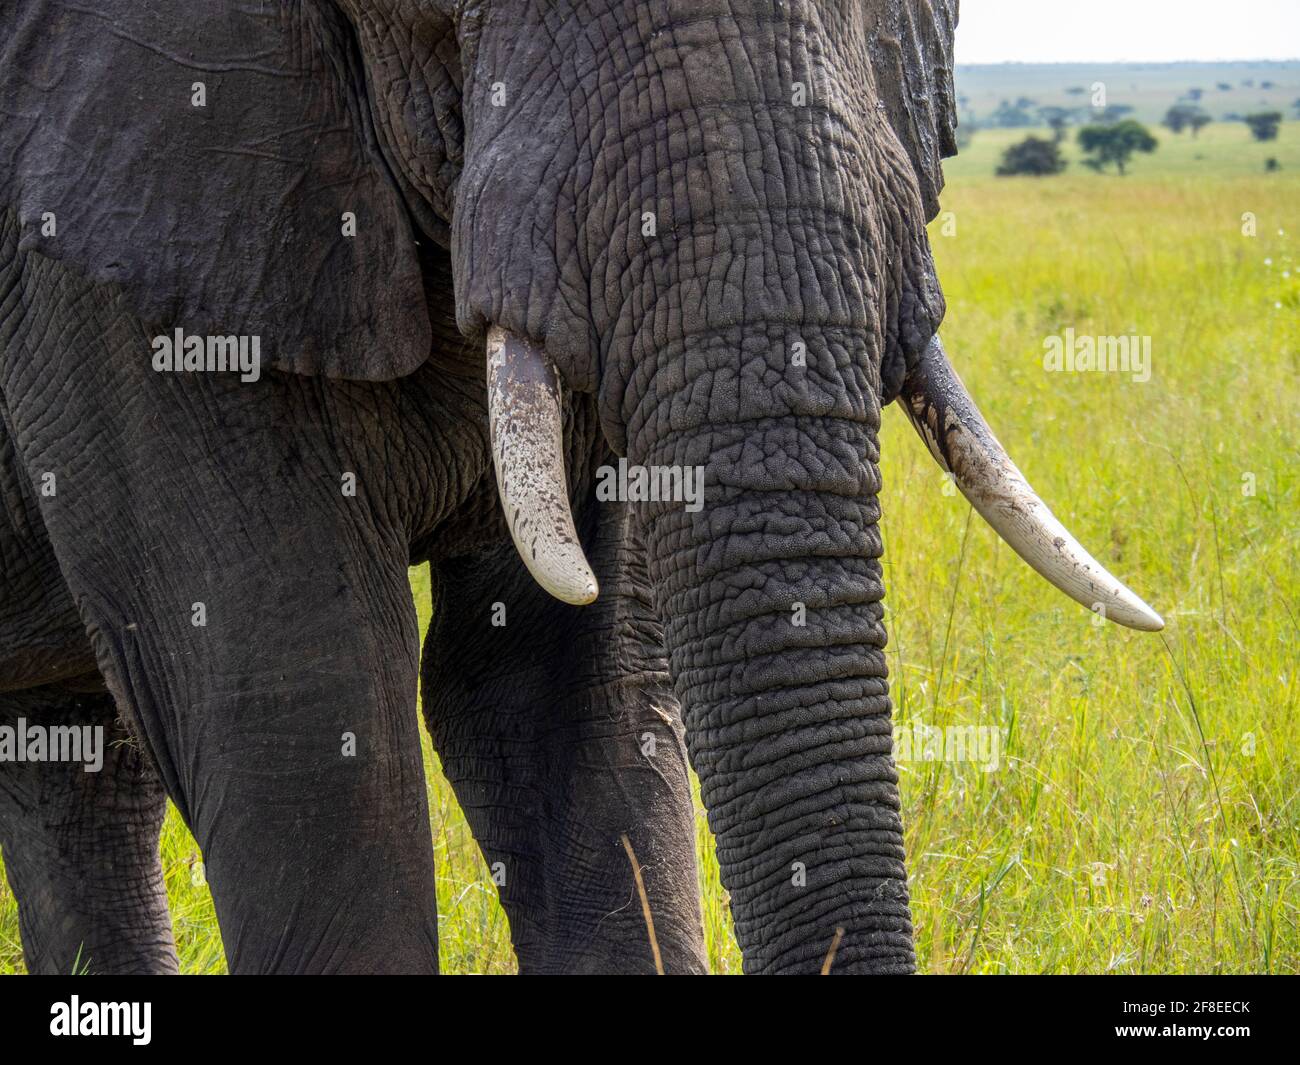 Serengeti-Nationalpark, Tansania, Afrika - 29. Februar 2020: Nahaufnahme des afrikanischen Elefantenrüssels und der Stoßzähne Stockfoto